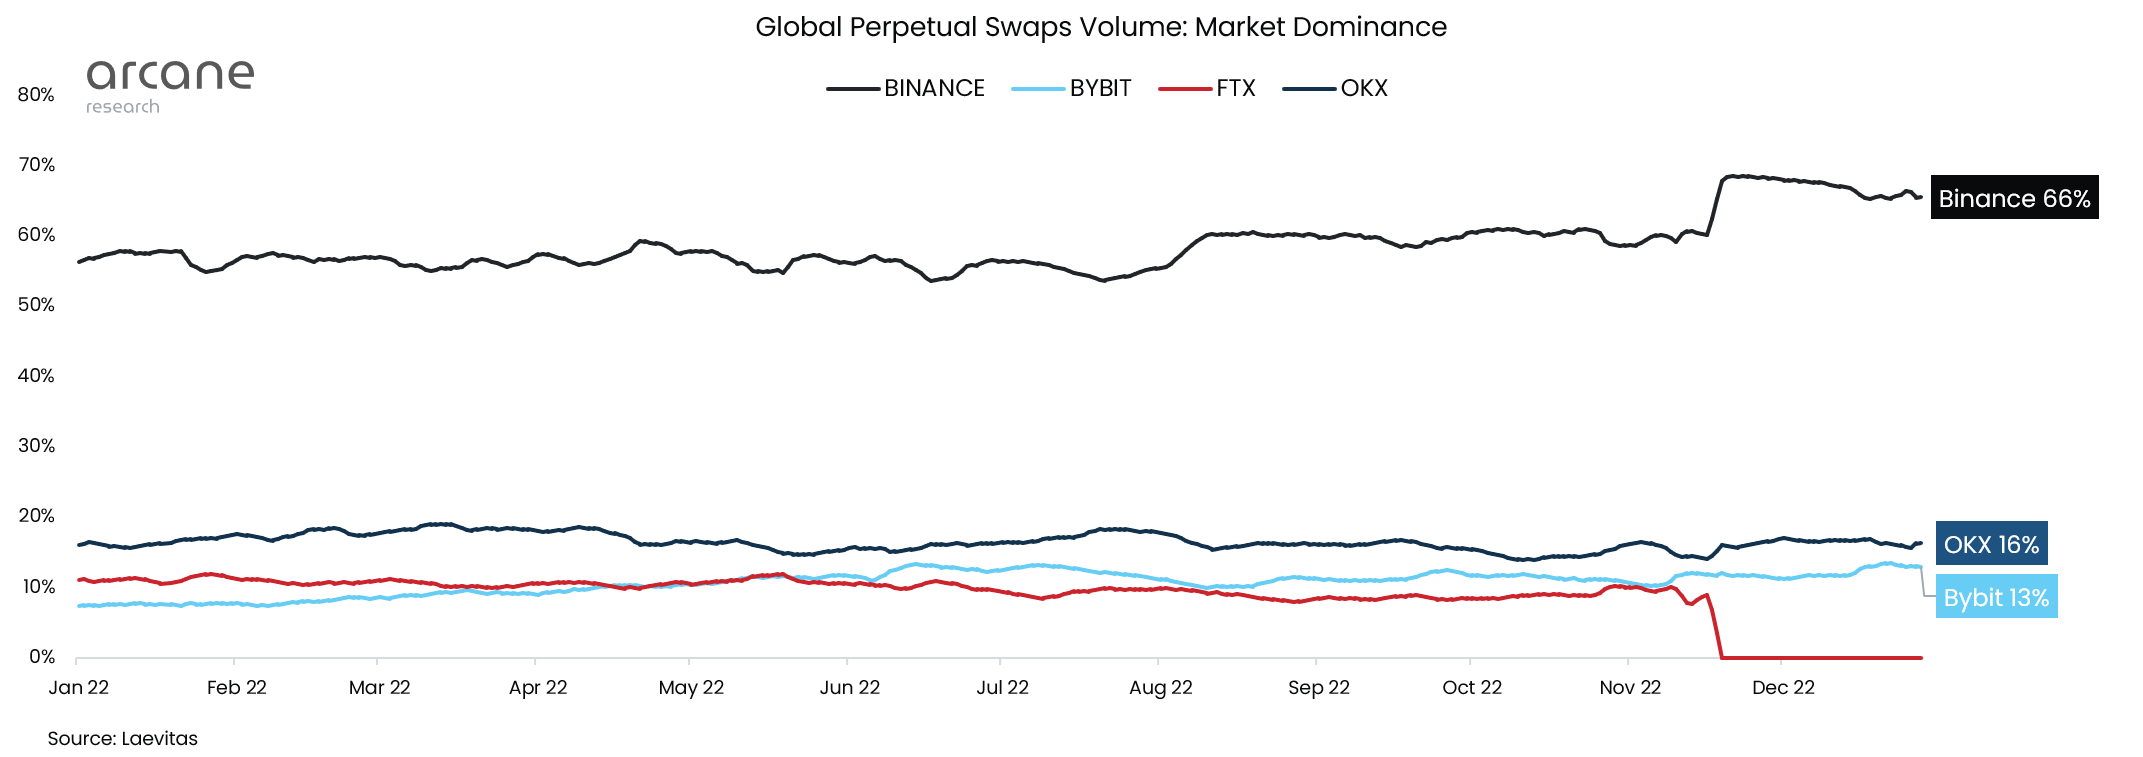 volumen global de swaps perpetuos